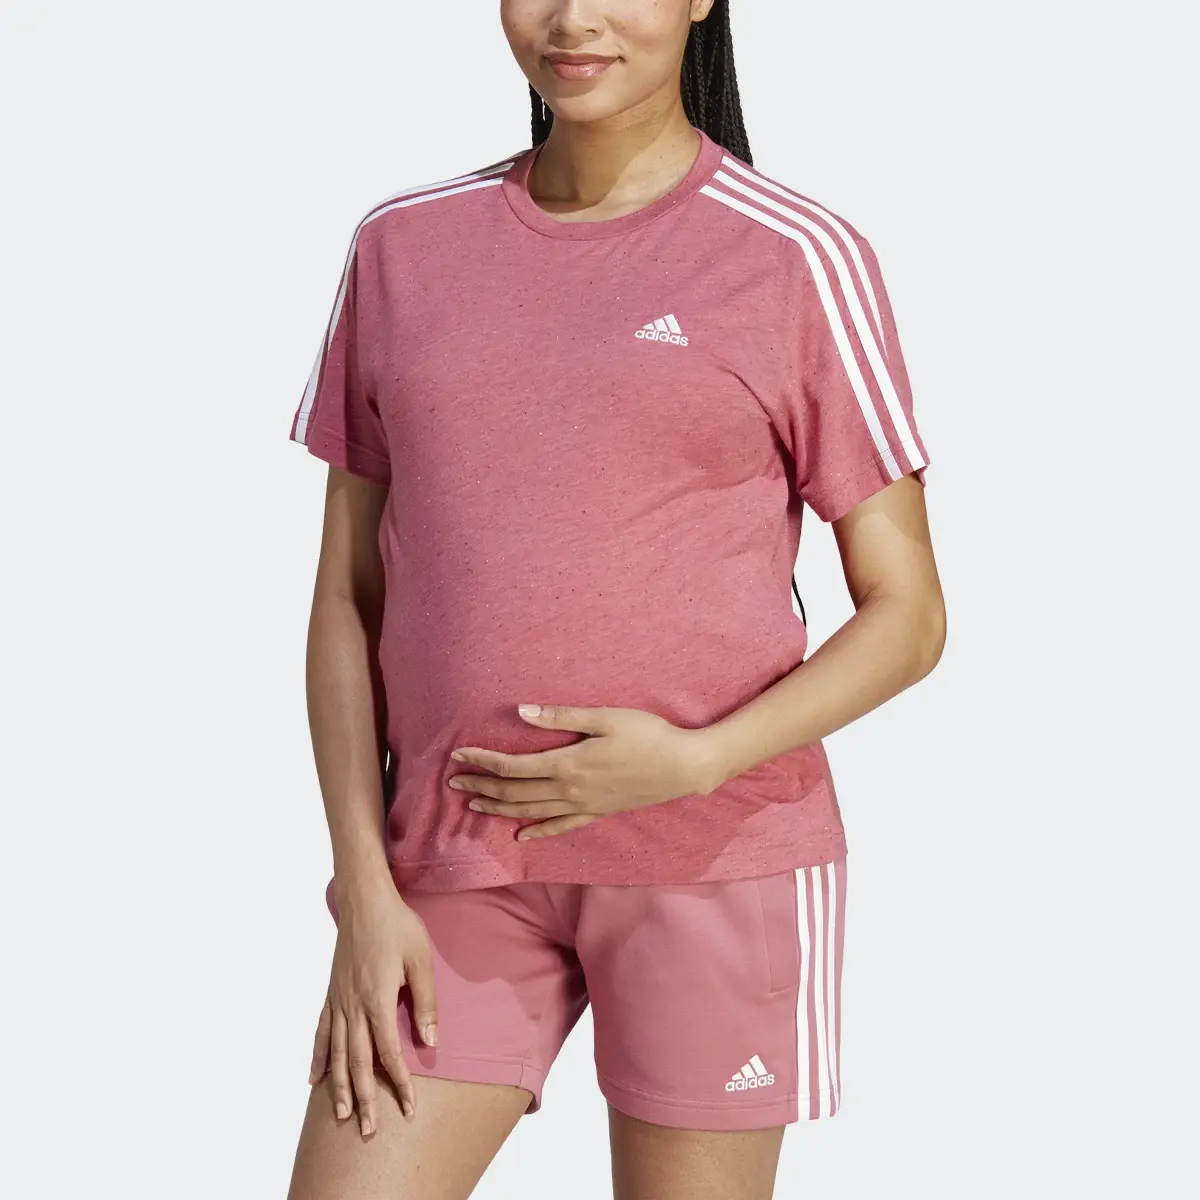 Adidas T-shirt de maternité (Maternité). 1